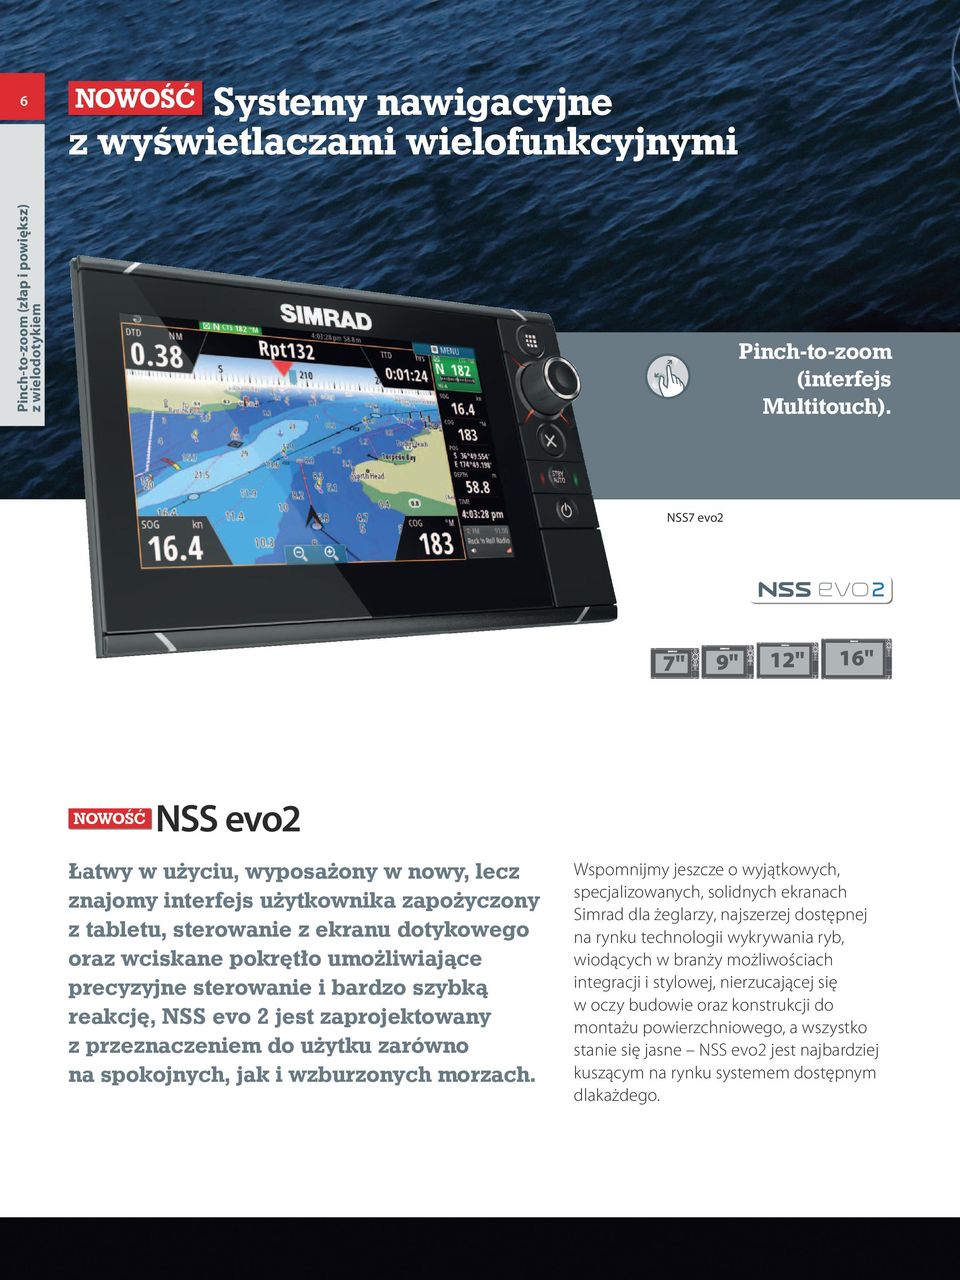 pokrętło umożliwiające precyzyjne sterowanie i bardzo szybką reakcję, NSS evo 2 jest zaprojektowany z przeznaczeniem do użytku zarówno na spokojnych, jak i wzburzonych morzach.